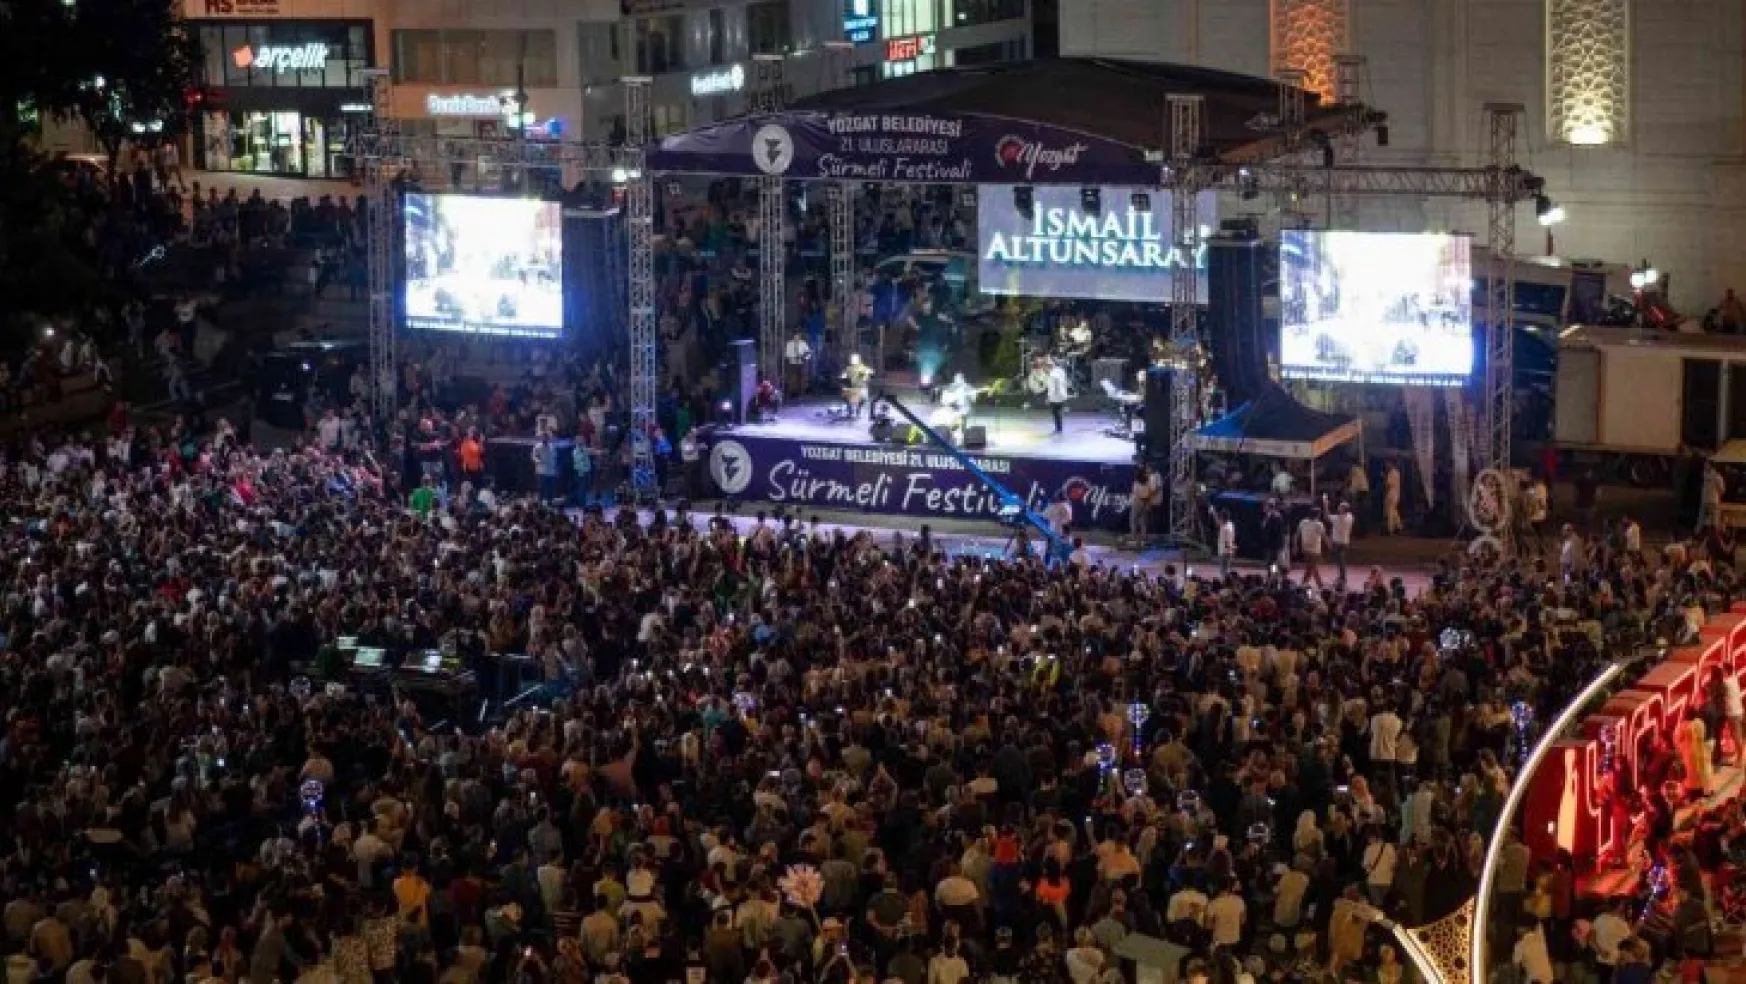 Yozgat'ta Sürmeli Festivali çeşitli etkinliklerle tamamlandı